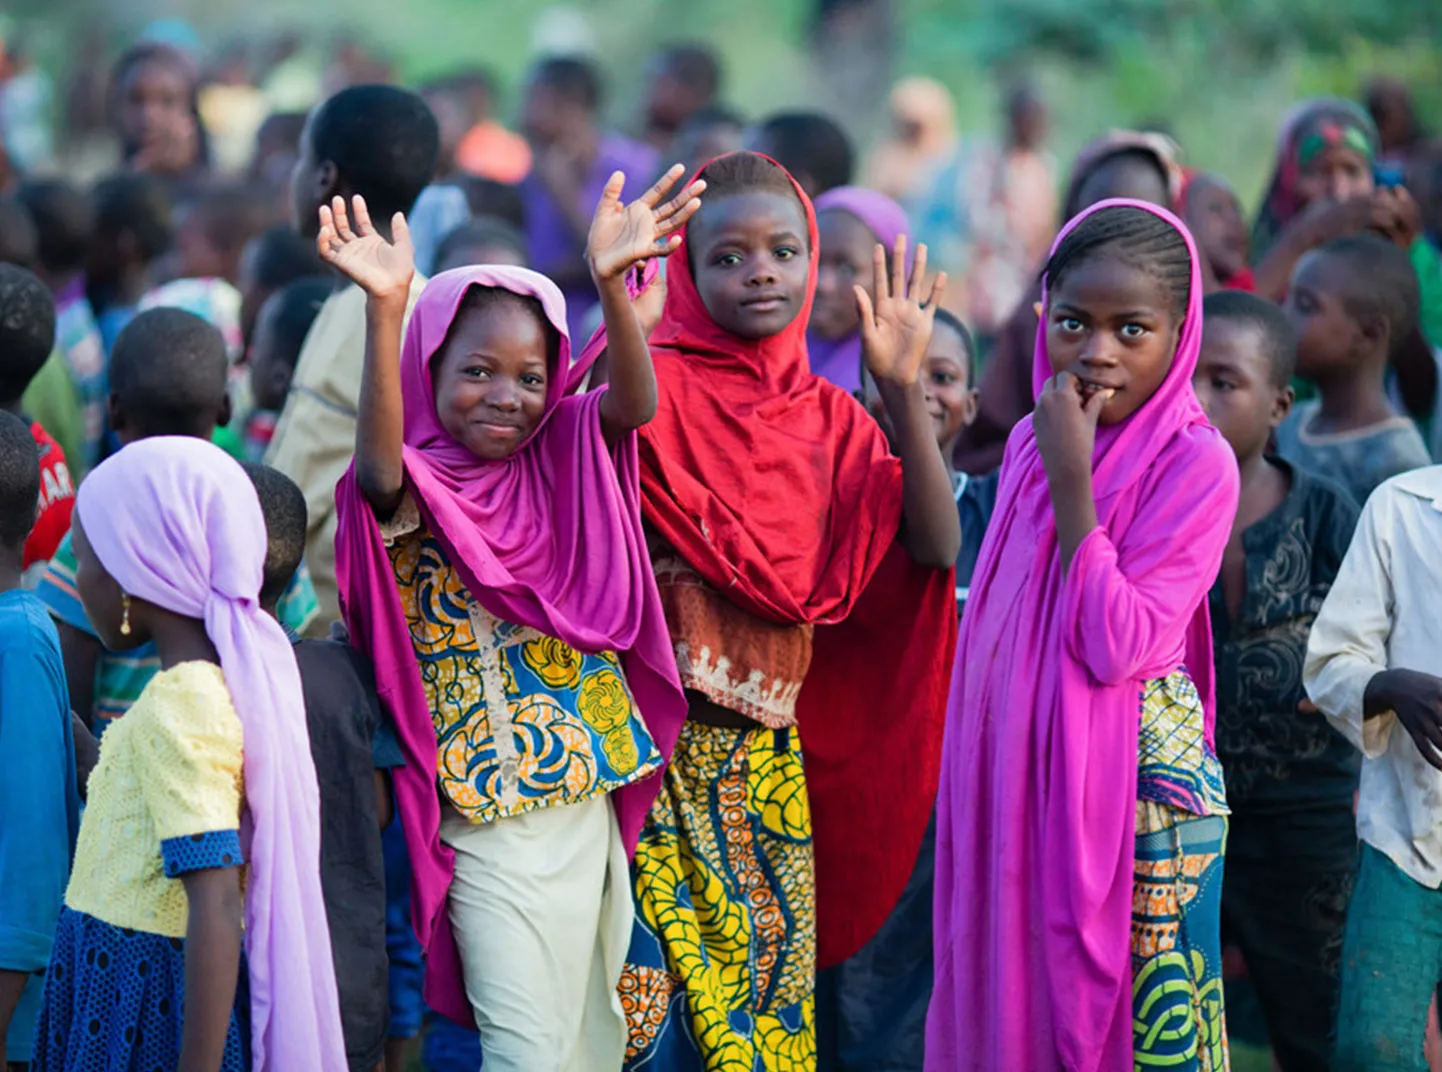 Um grupo de crianças se reúne na região do Sahel, no Níger. Três deles estão sorrindo e acenando para a câmera.